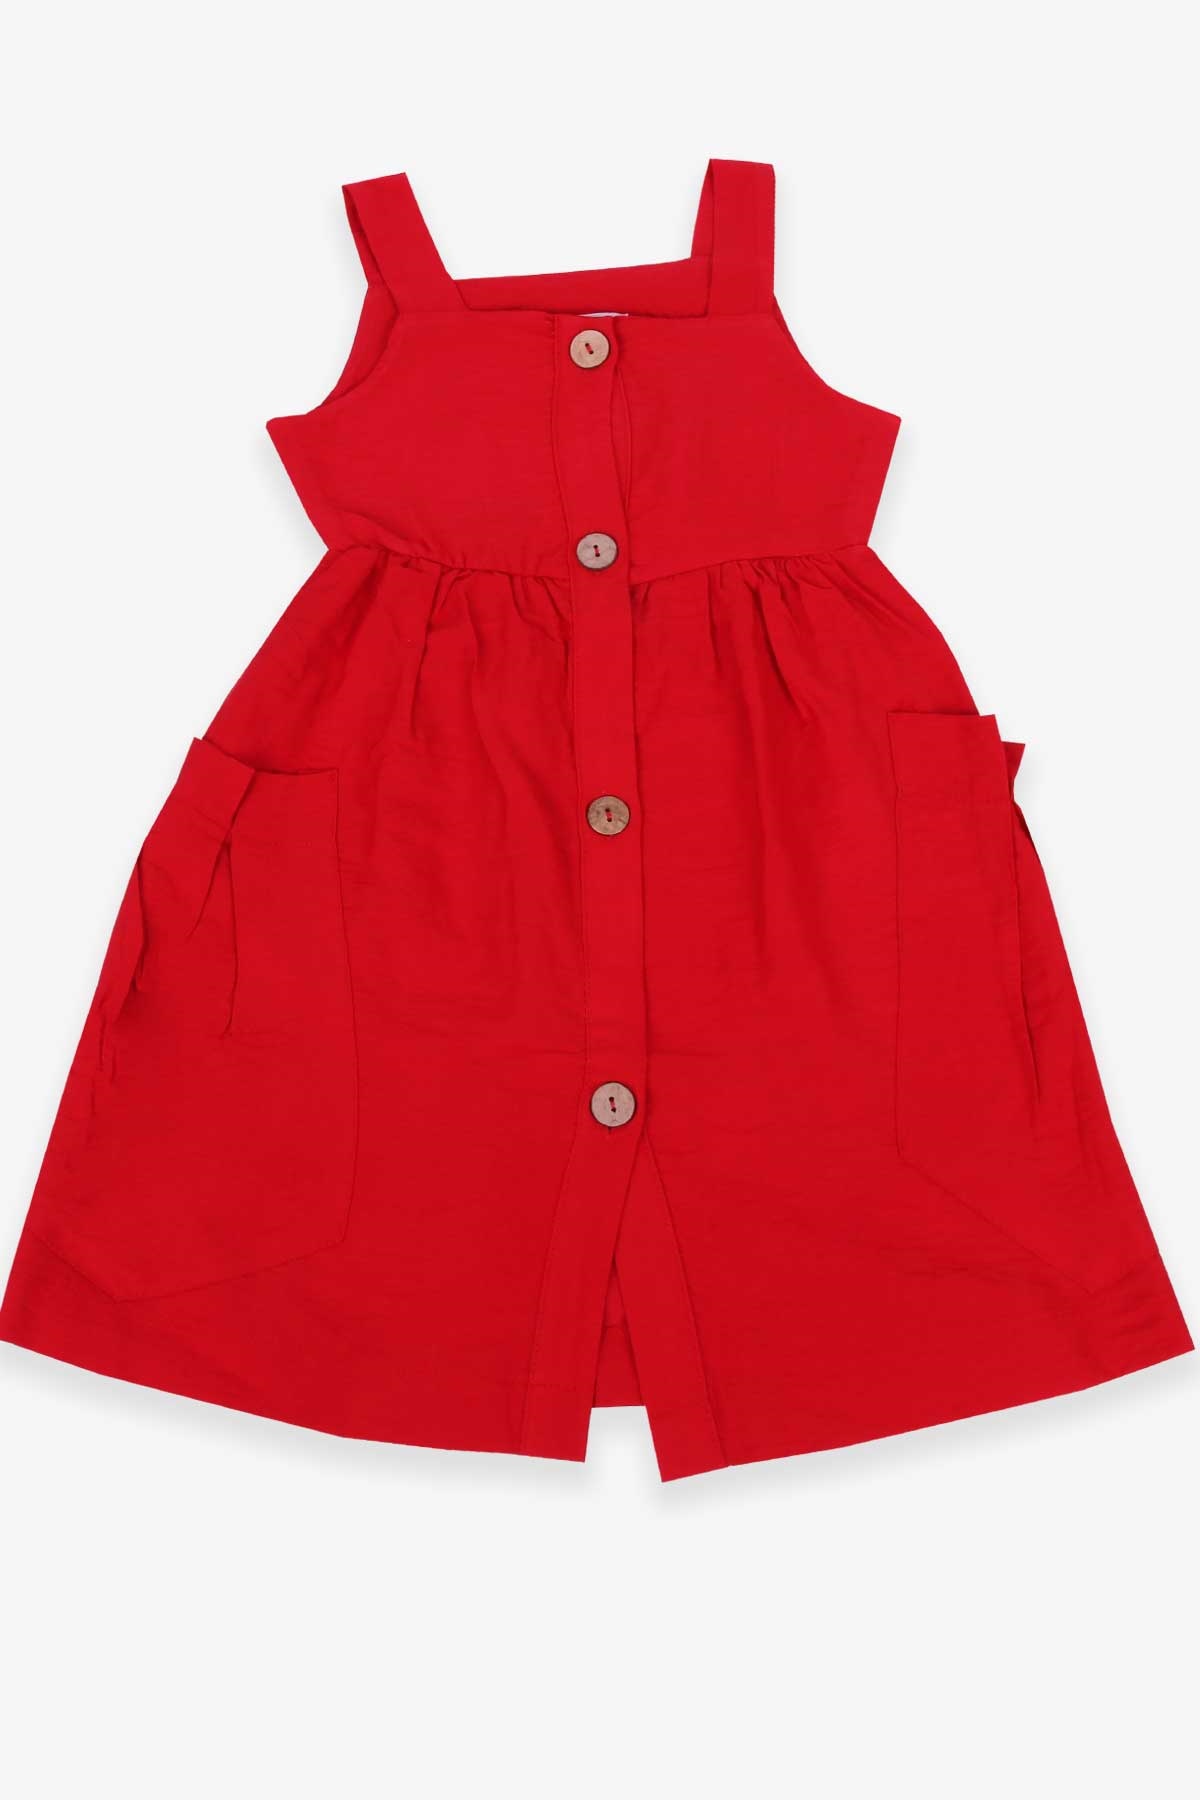 Kız Çocuk Elbise Askılı Torba Cepli Kırmızı 5-16 Yaş - Breeze